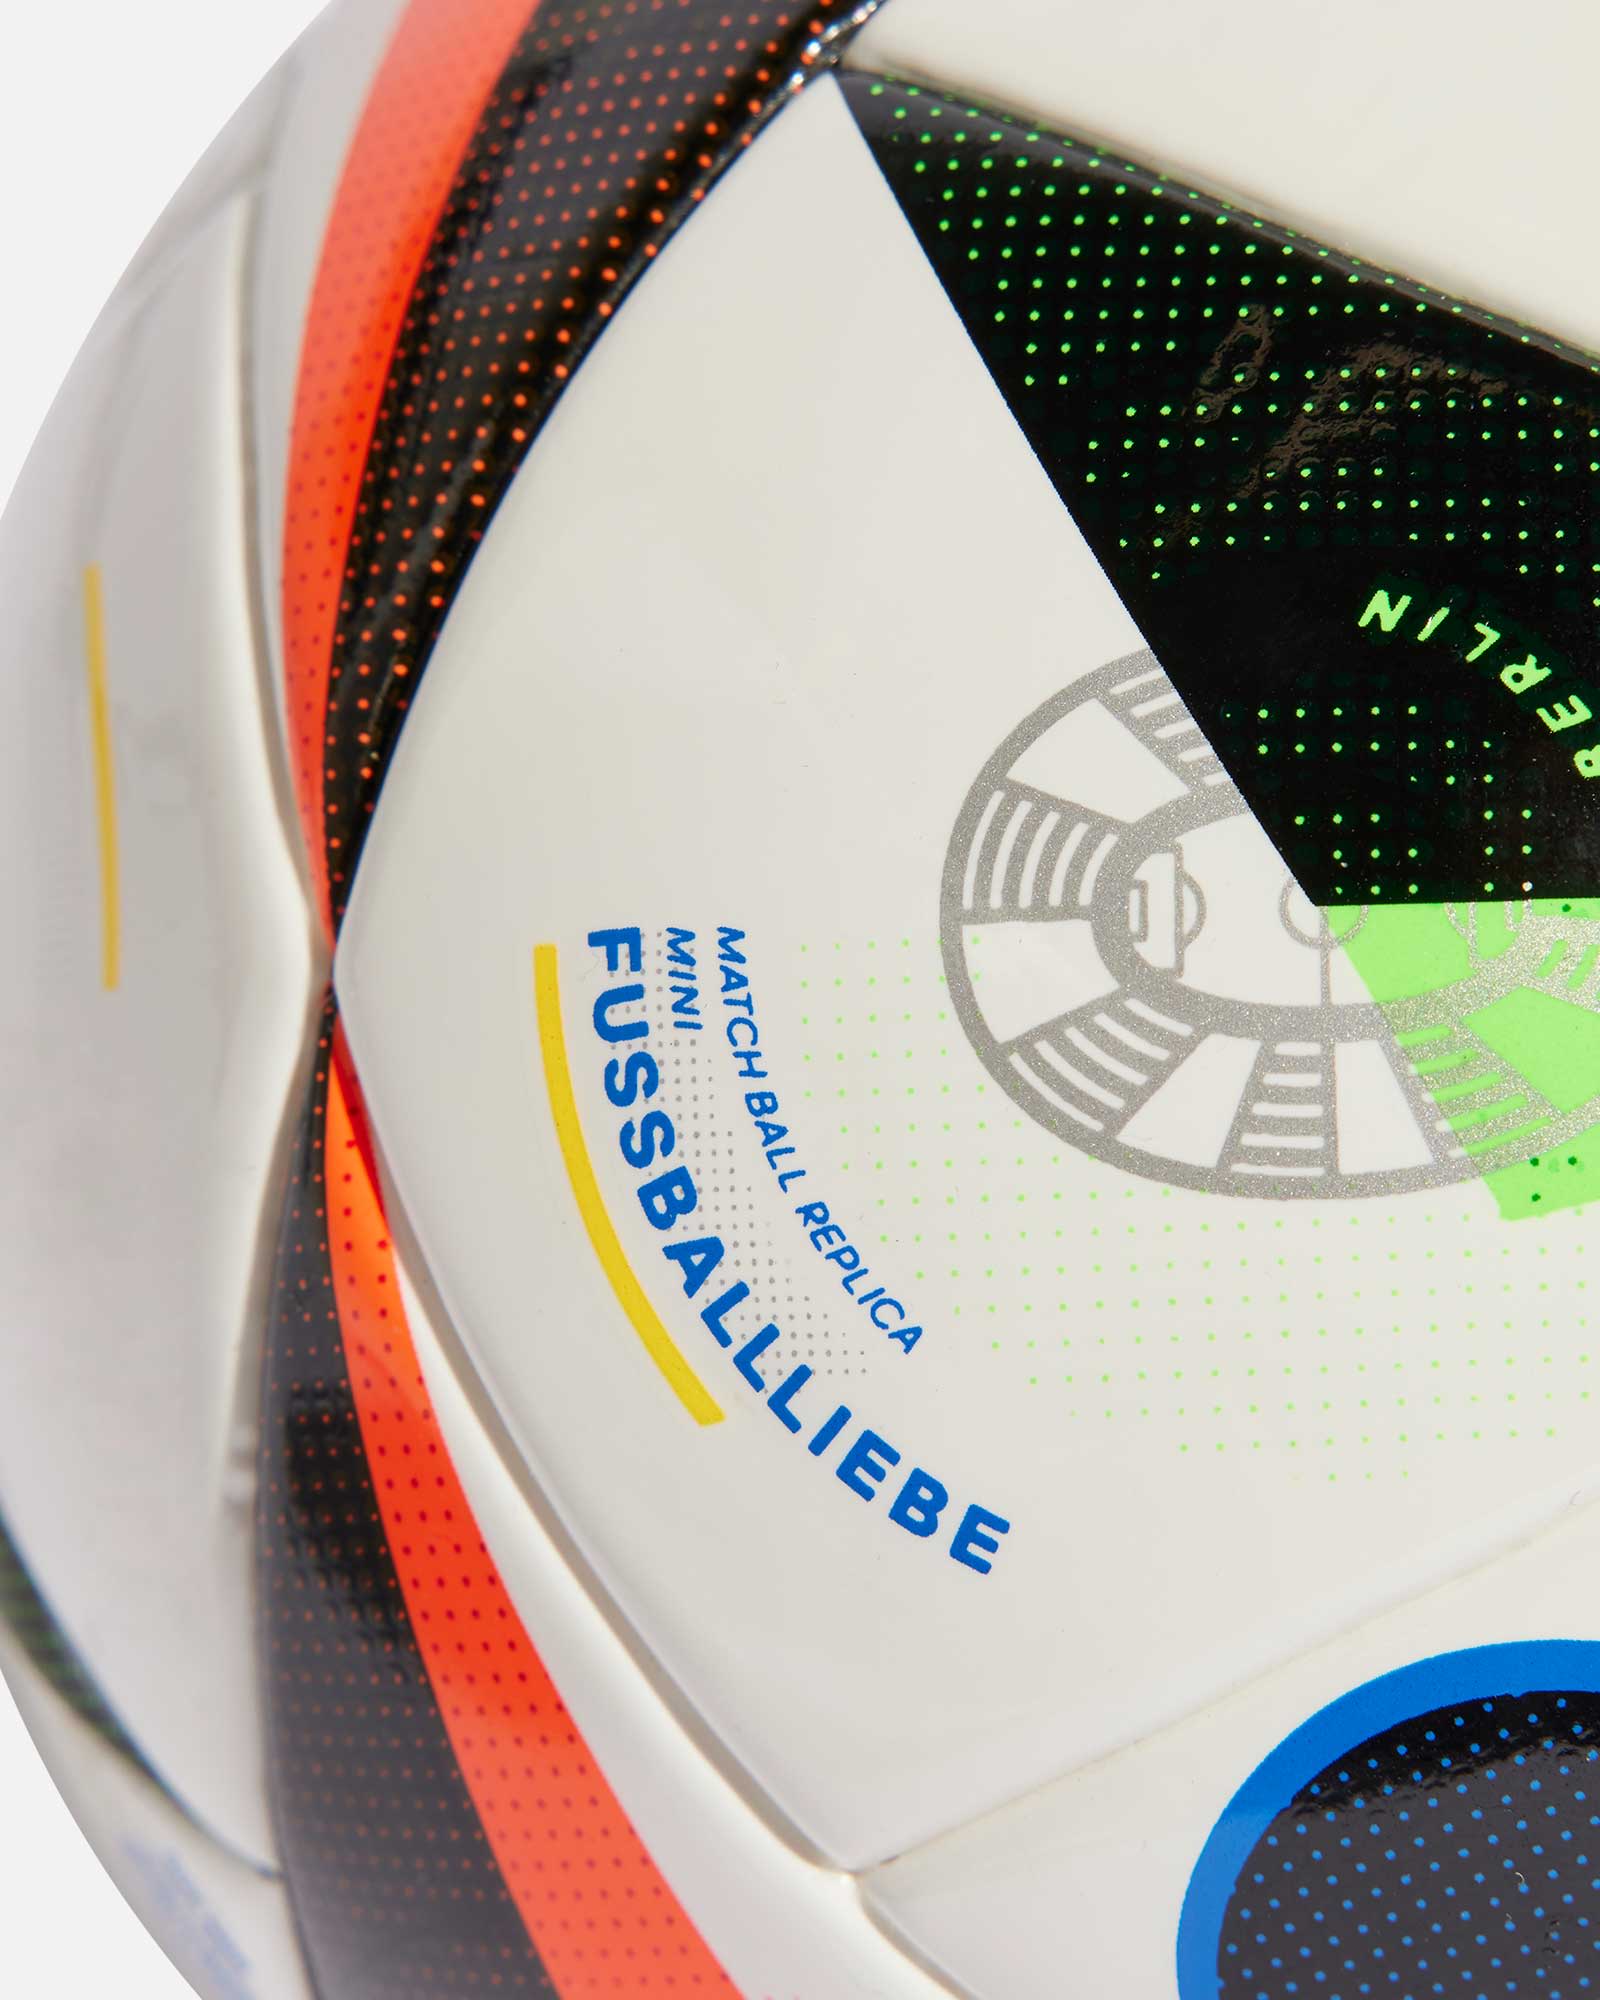 Así es 'Fussballliebe', el balón oficial de la Eurocopa 2024 que